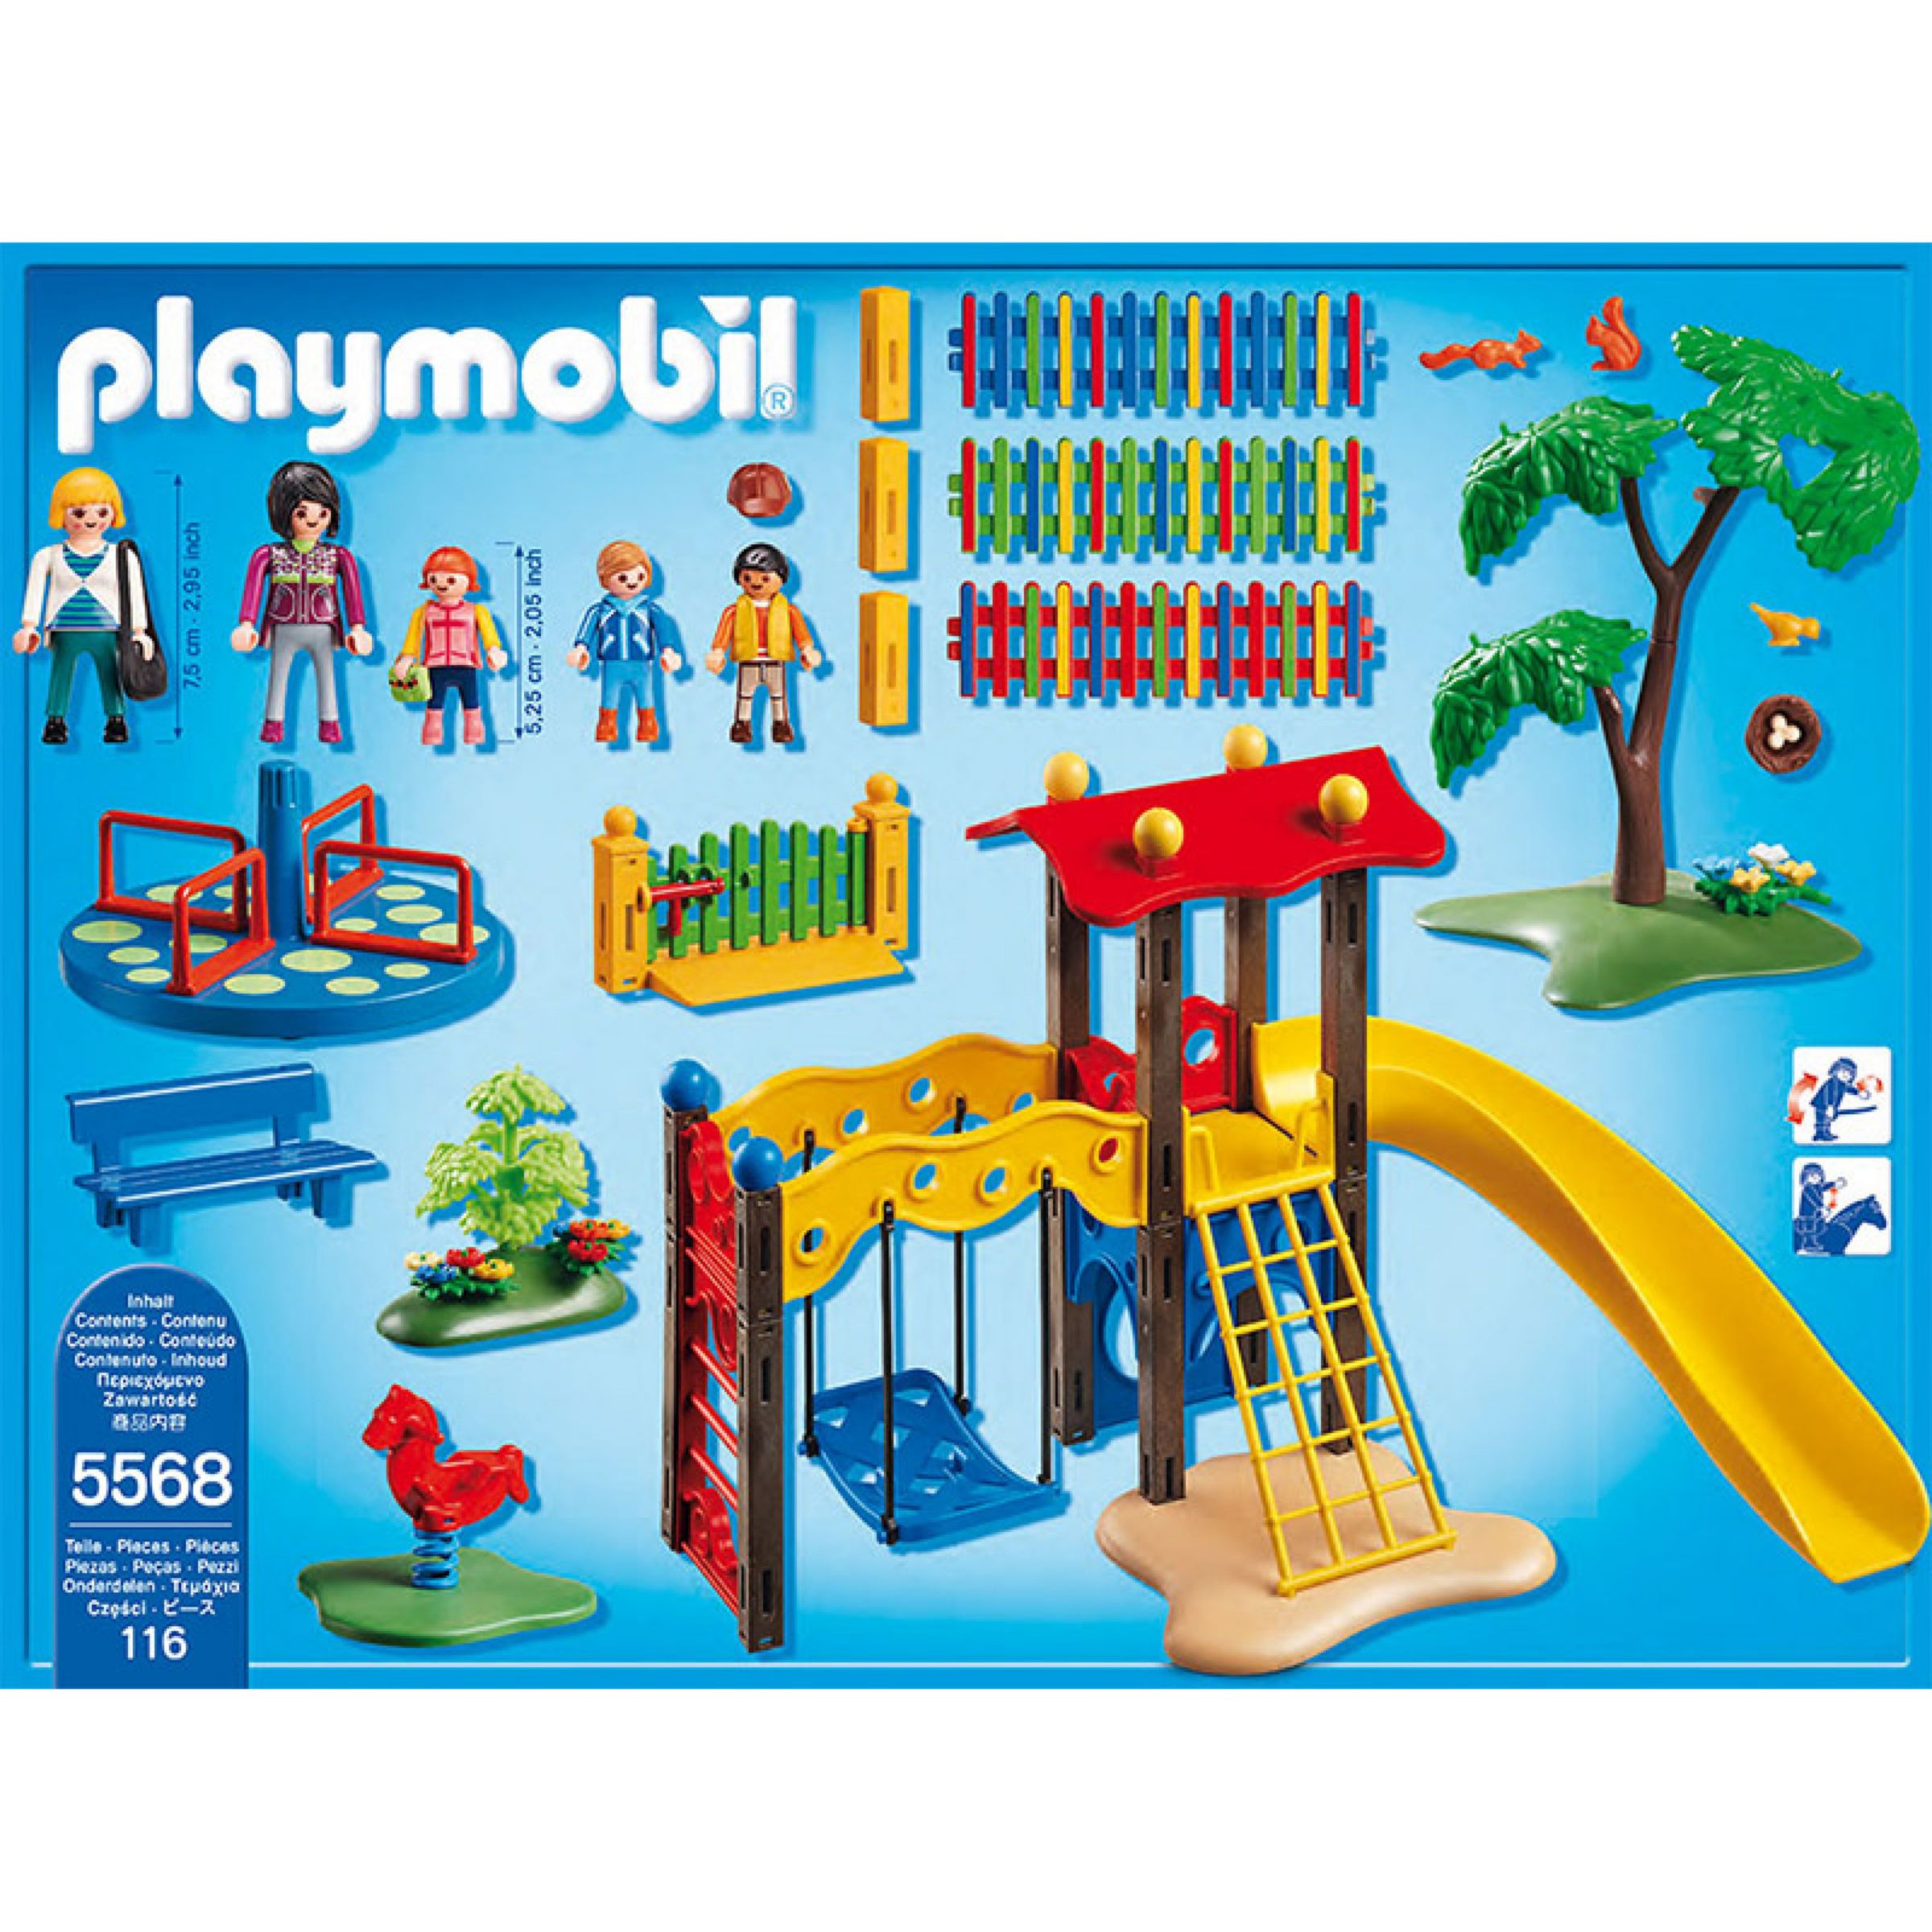 playmobil 5568 city life children's playground